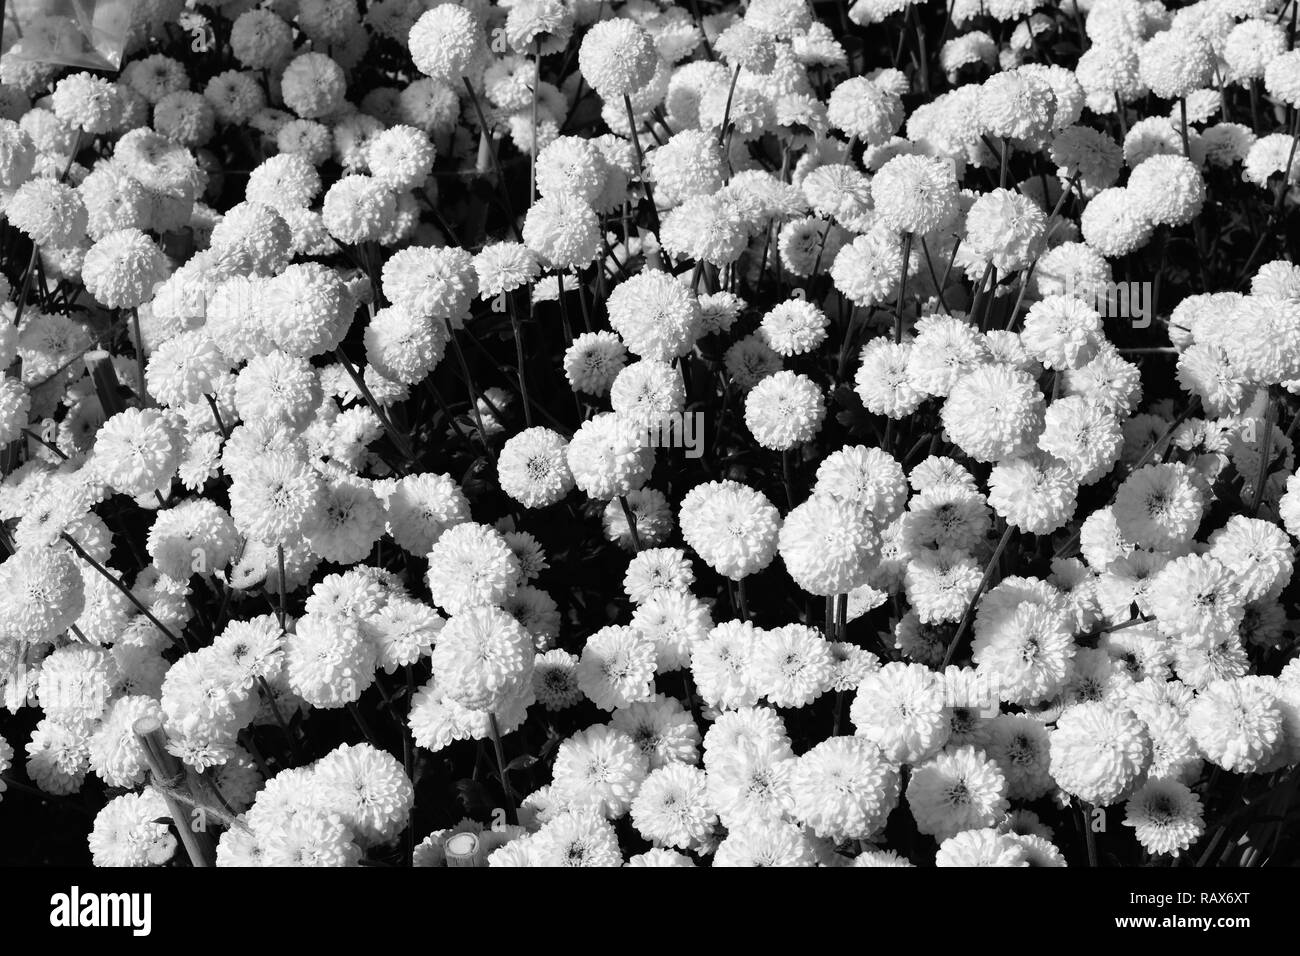 White Pom Pom Chrysanthemums In Monochrome Stock Photo Alamy